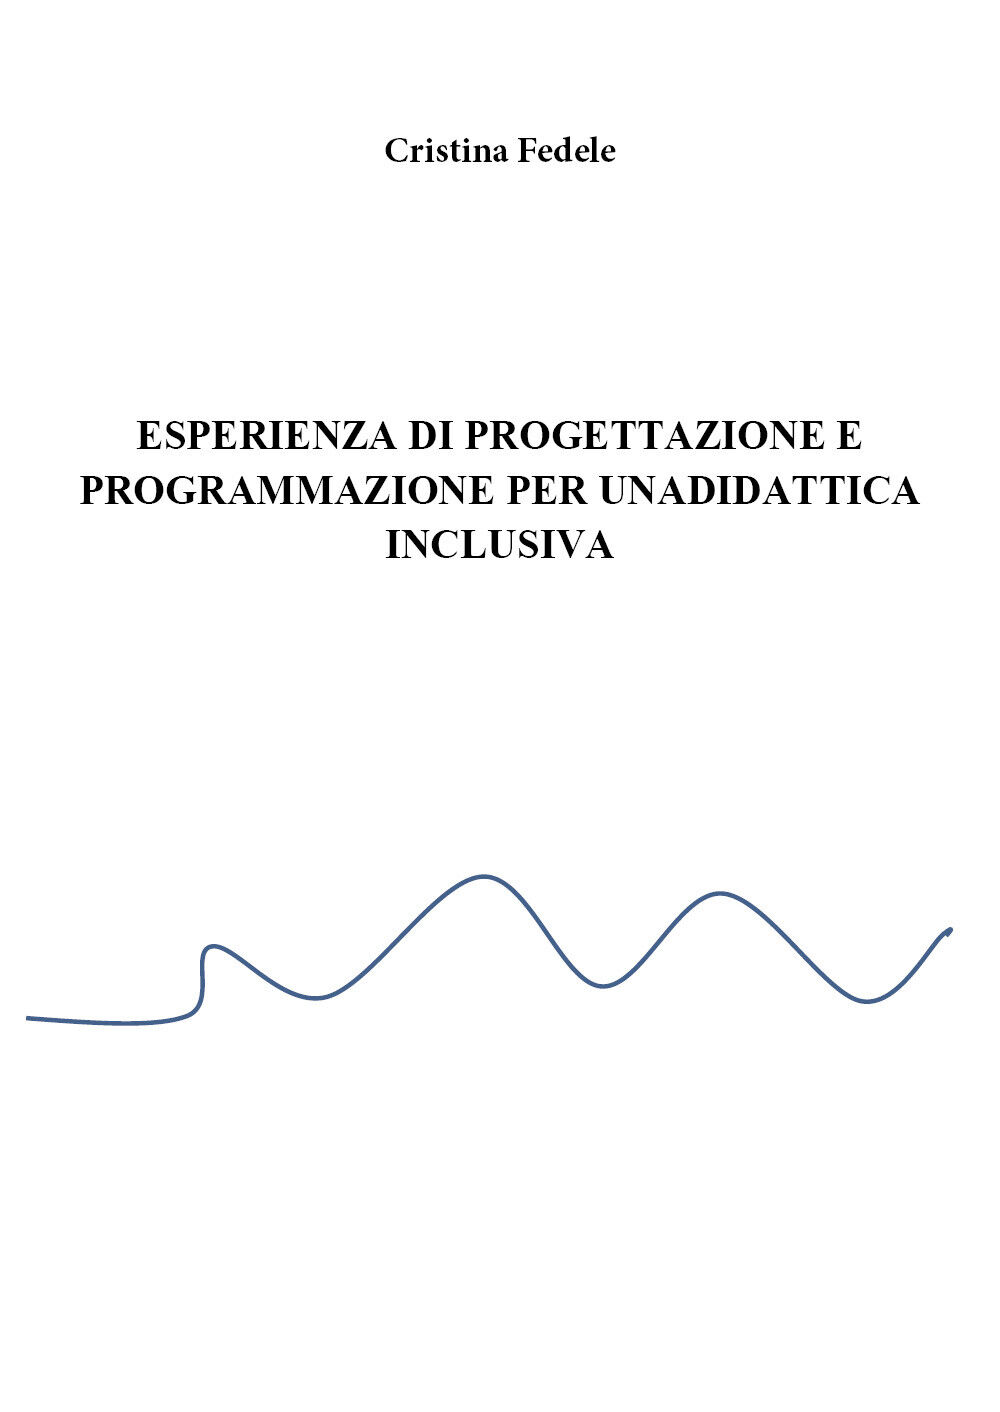 Esperienza di progettazione e programmazione didattica inclusiva,Cristina Fedele